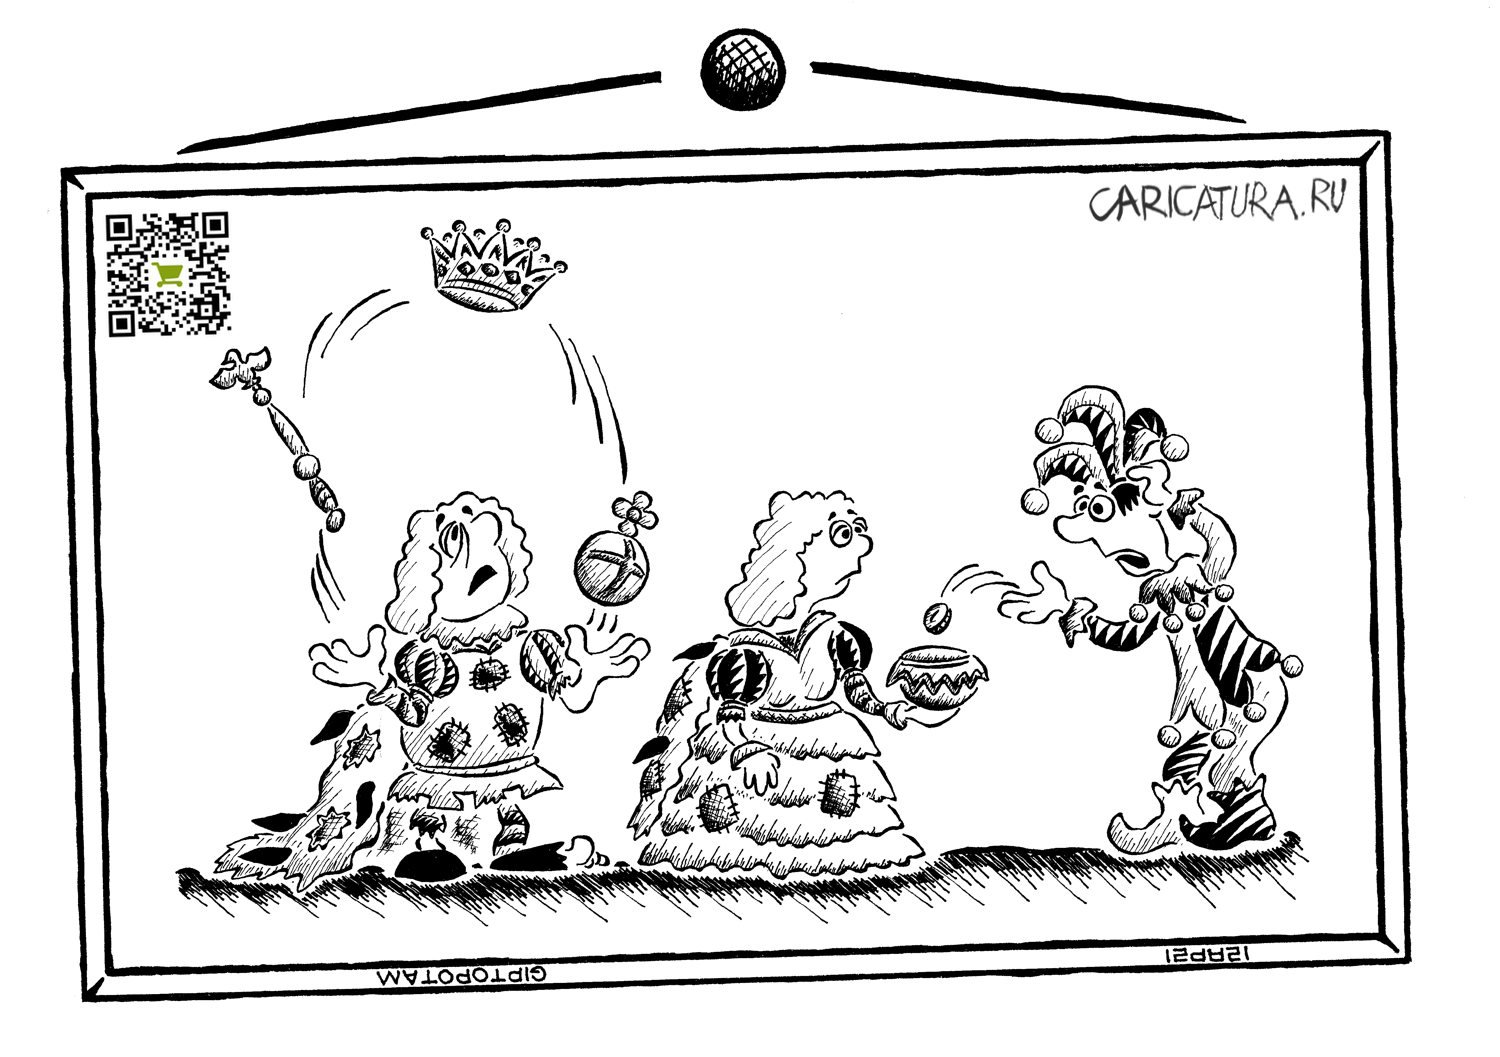 Карикатура "Мы бродячие артист...ократы", Александр Евангелистов